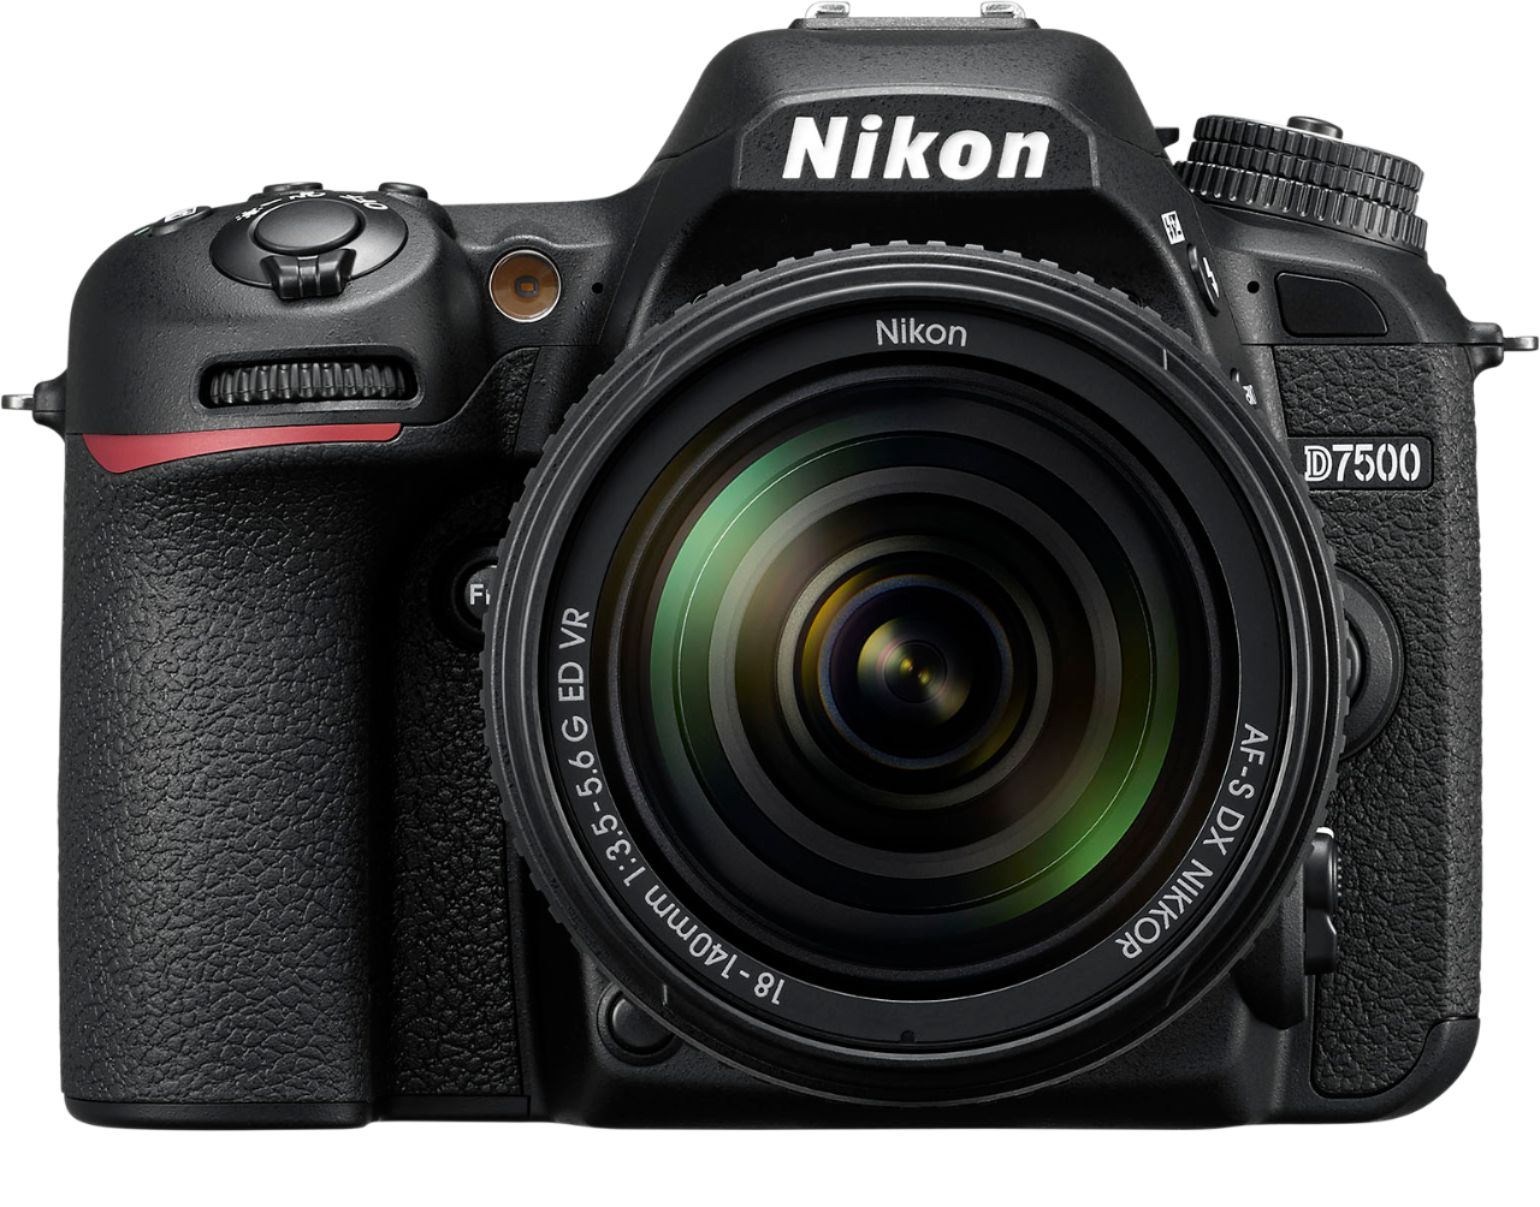 Nikon D7500 DSLR 4K Video Camera with AF-S DX NIKKOR 18-140mm f/3.5-5.6G ED  VR lens Black 1582 - Best Buy